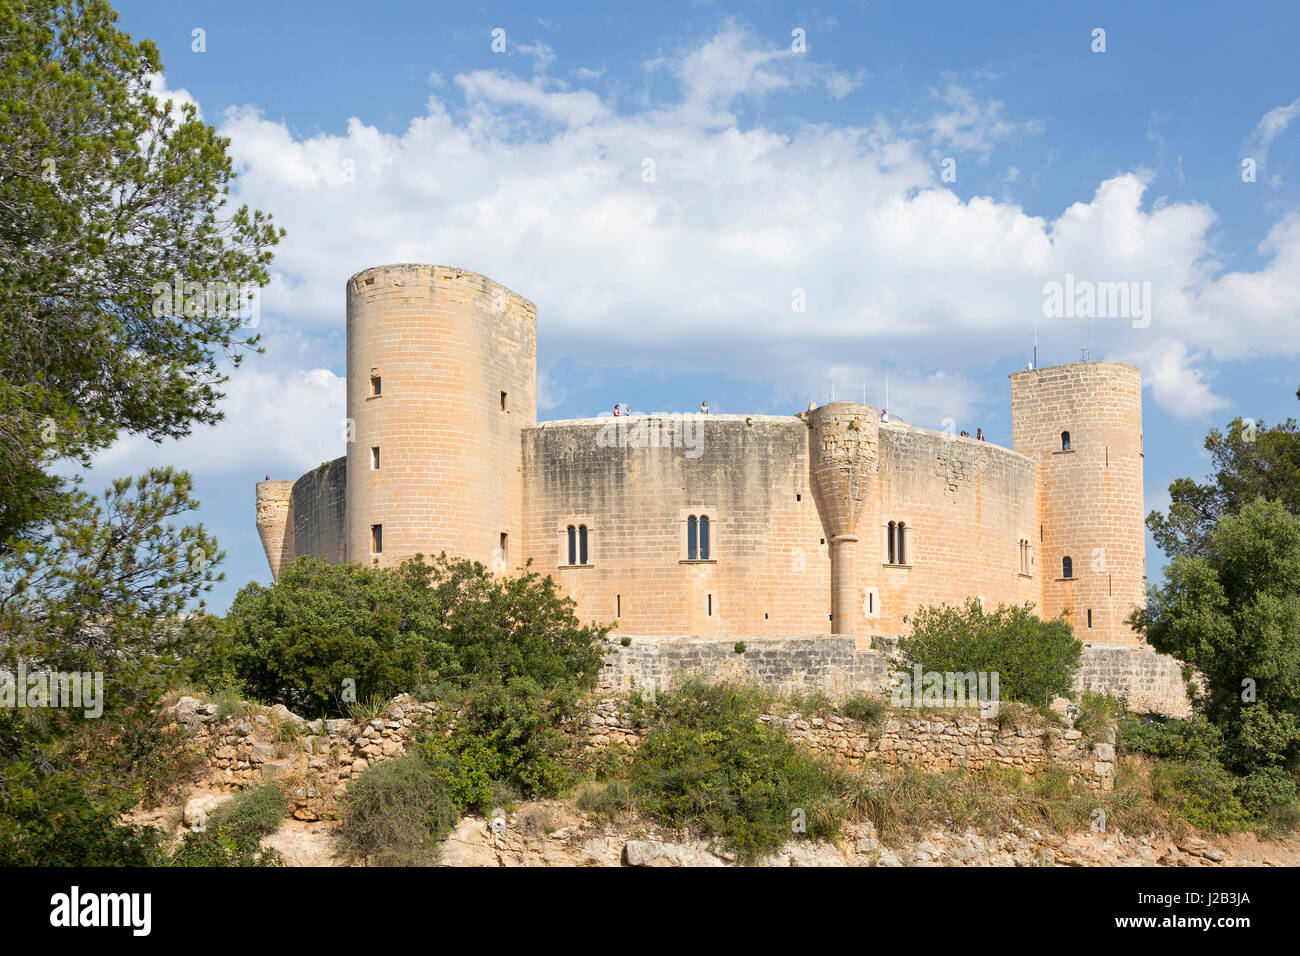 Castell de Bellver in Palma de Mallorca, Spain Stock Photo